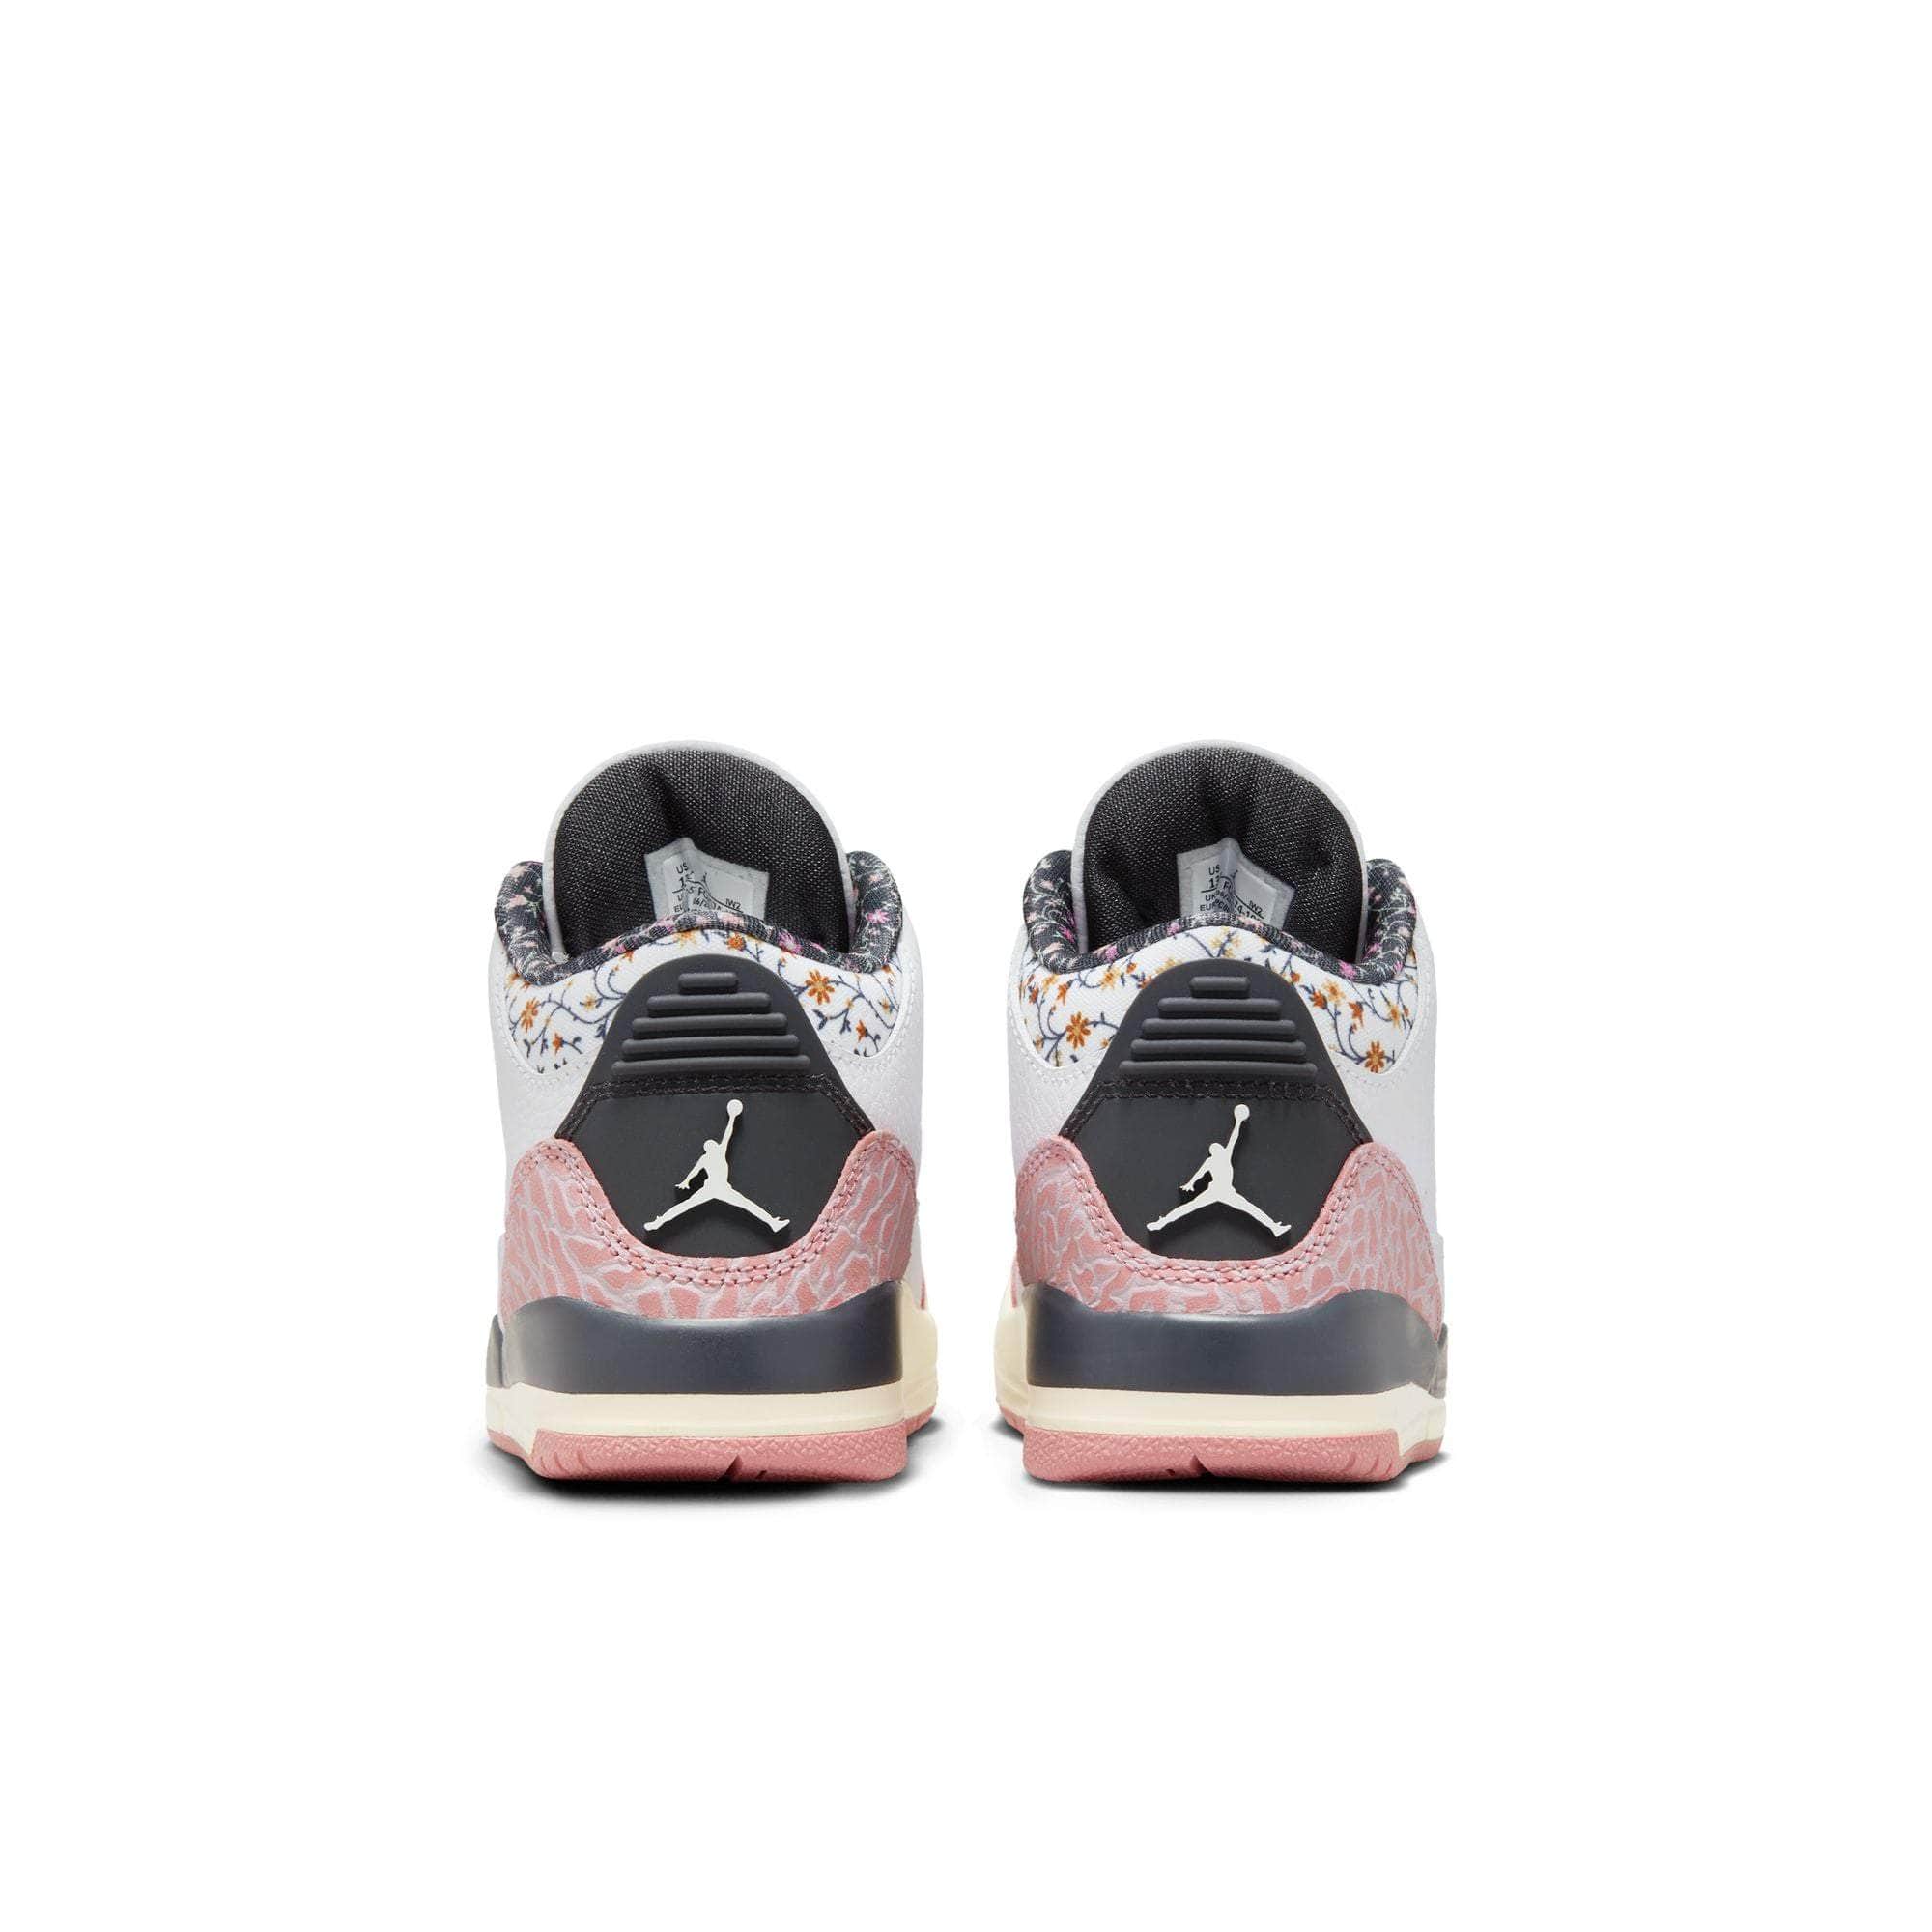 Air Jordan Footwear Air Jordan 3 Retro "Red Stardust" - Kid's PS